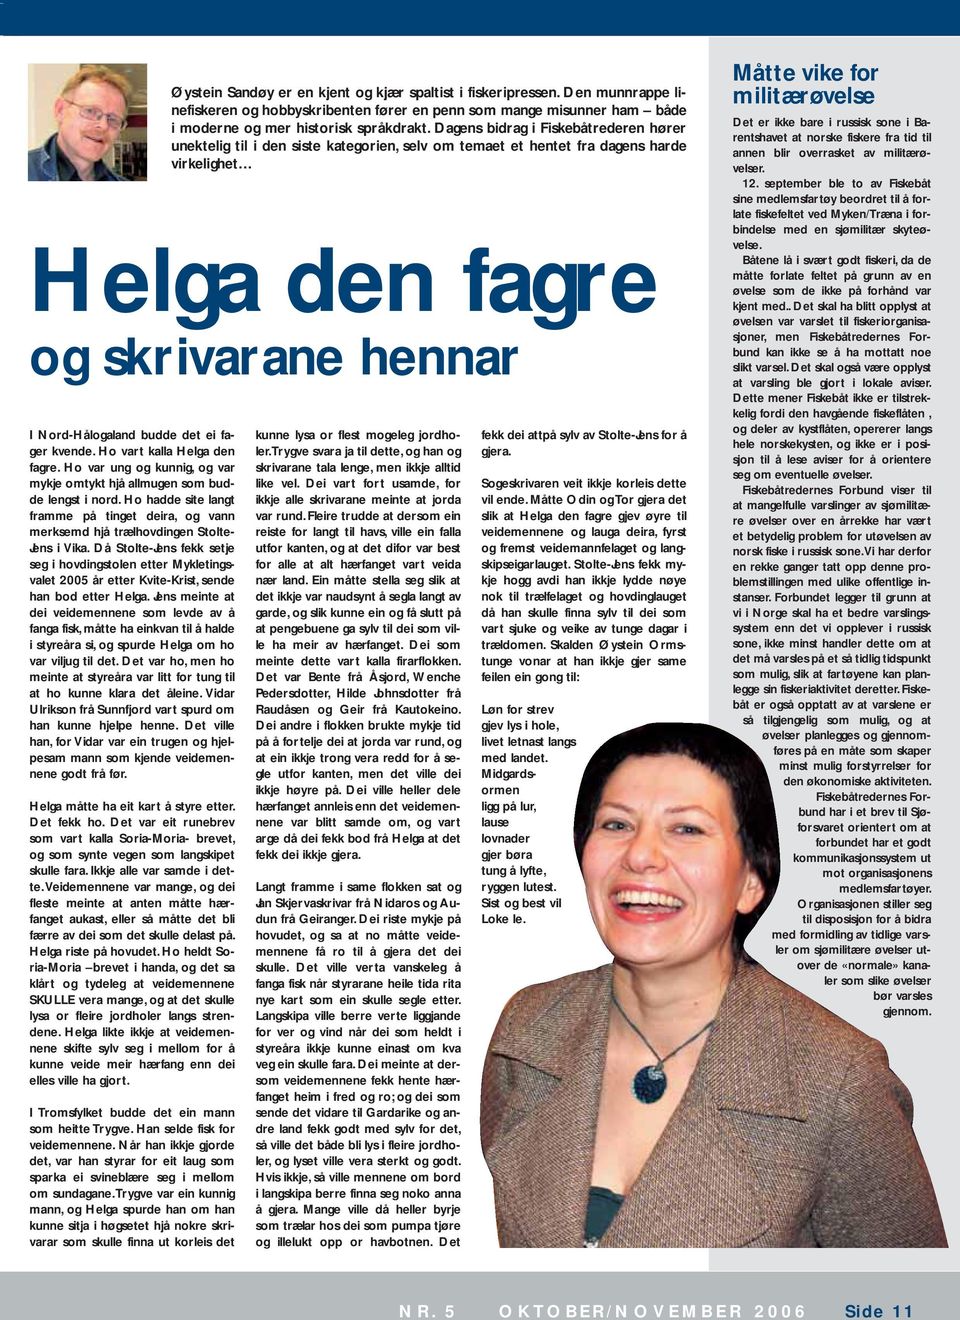 Då Stolte-Jens fekk setje seg i hovdingstolen etter Mykletingsvalet 2005 år etter Kvite-Krist, sende han bod etter Helga.